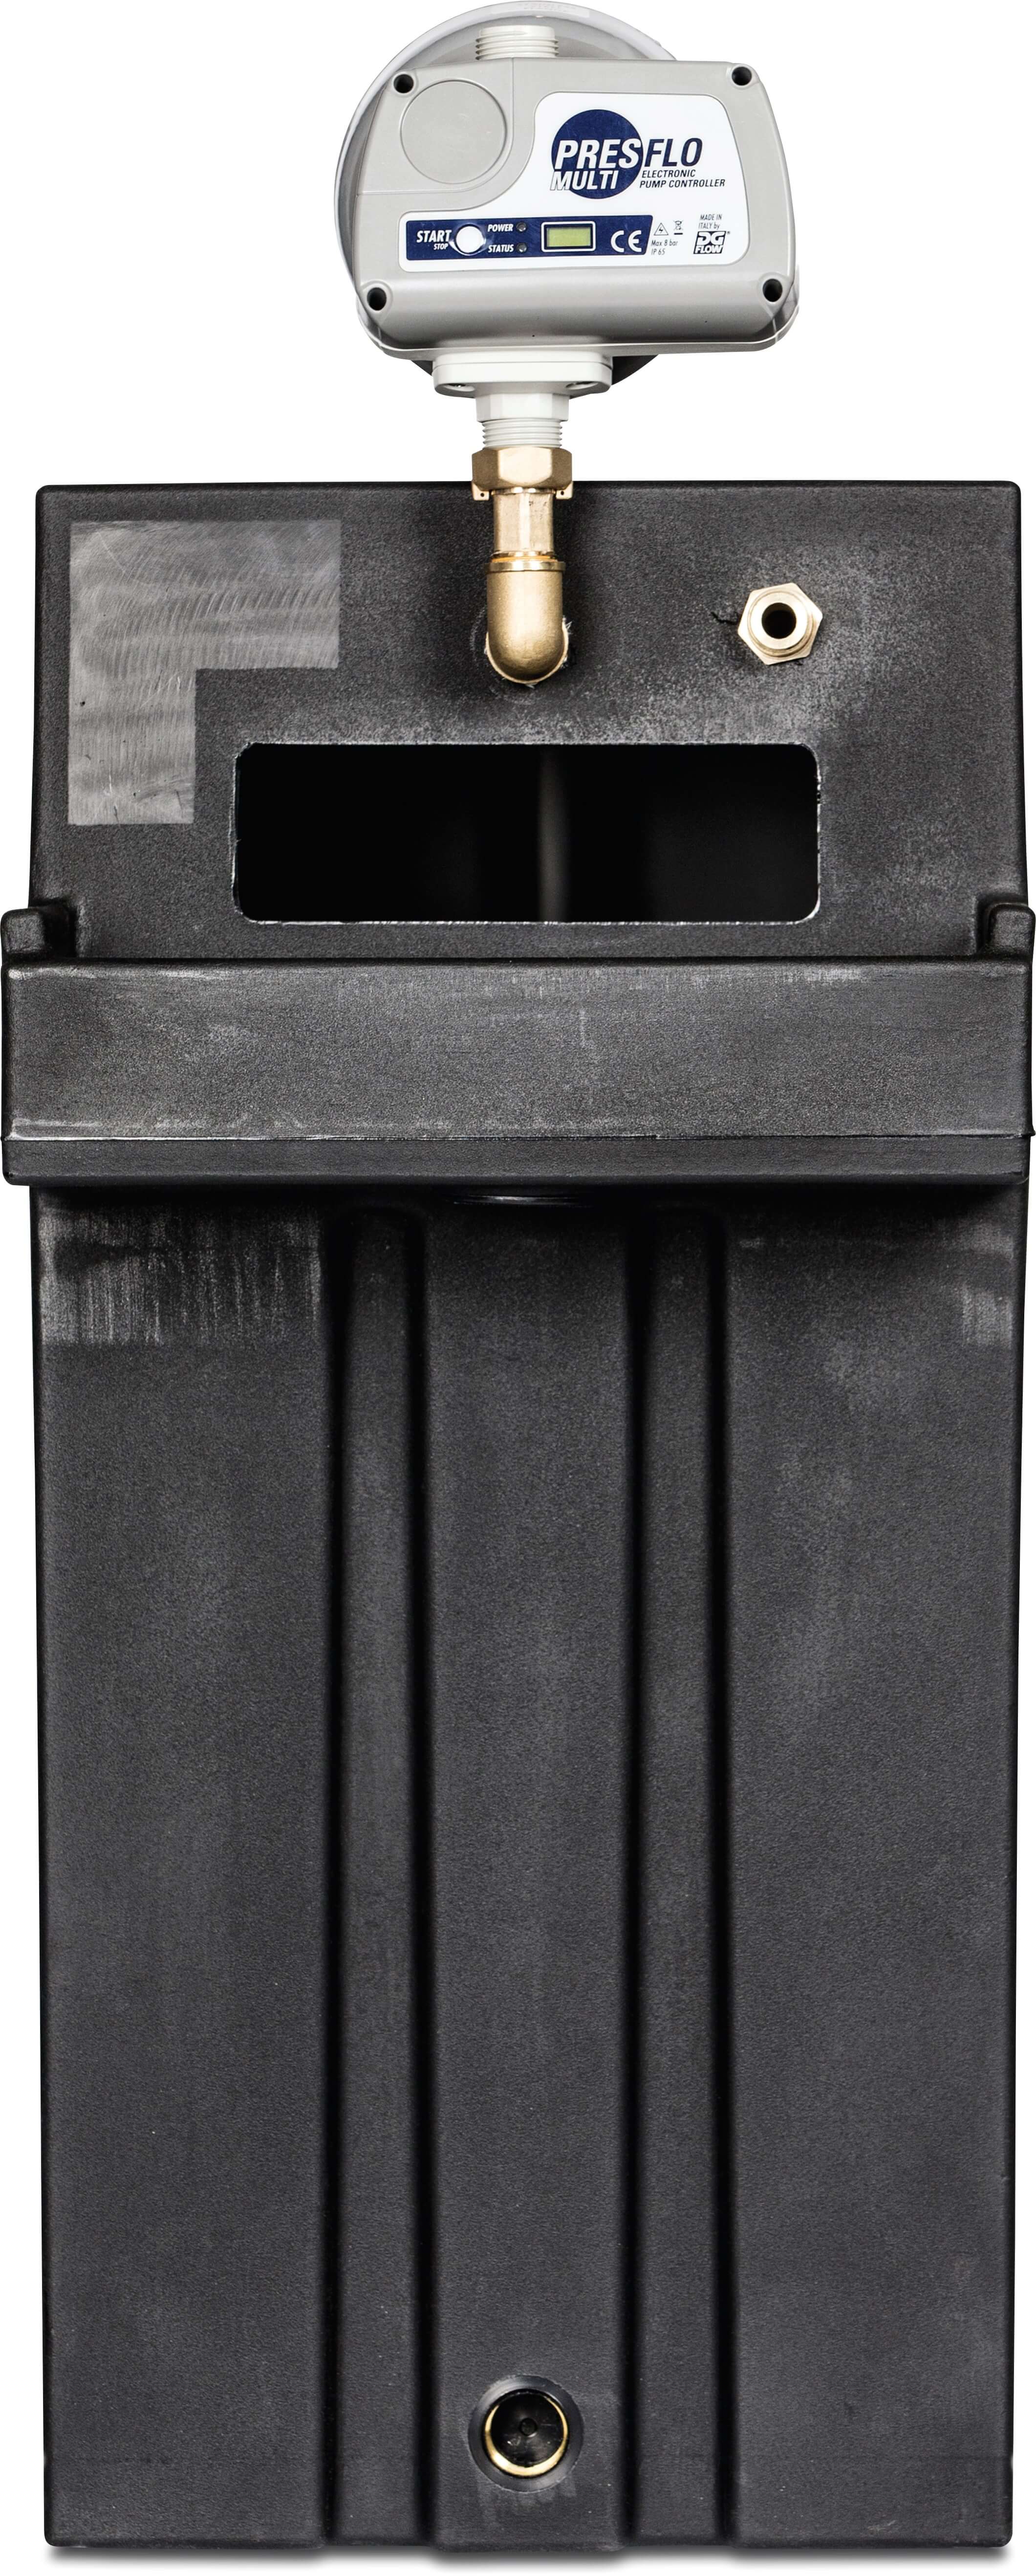 Trykforøgeranlæg 3/4" x 1" udvendig gevind 230VAC BELGAQUA type Hecaton med Minisub & Presflo multi